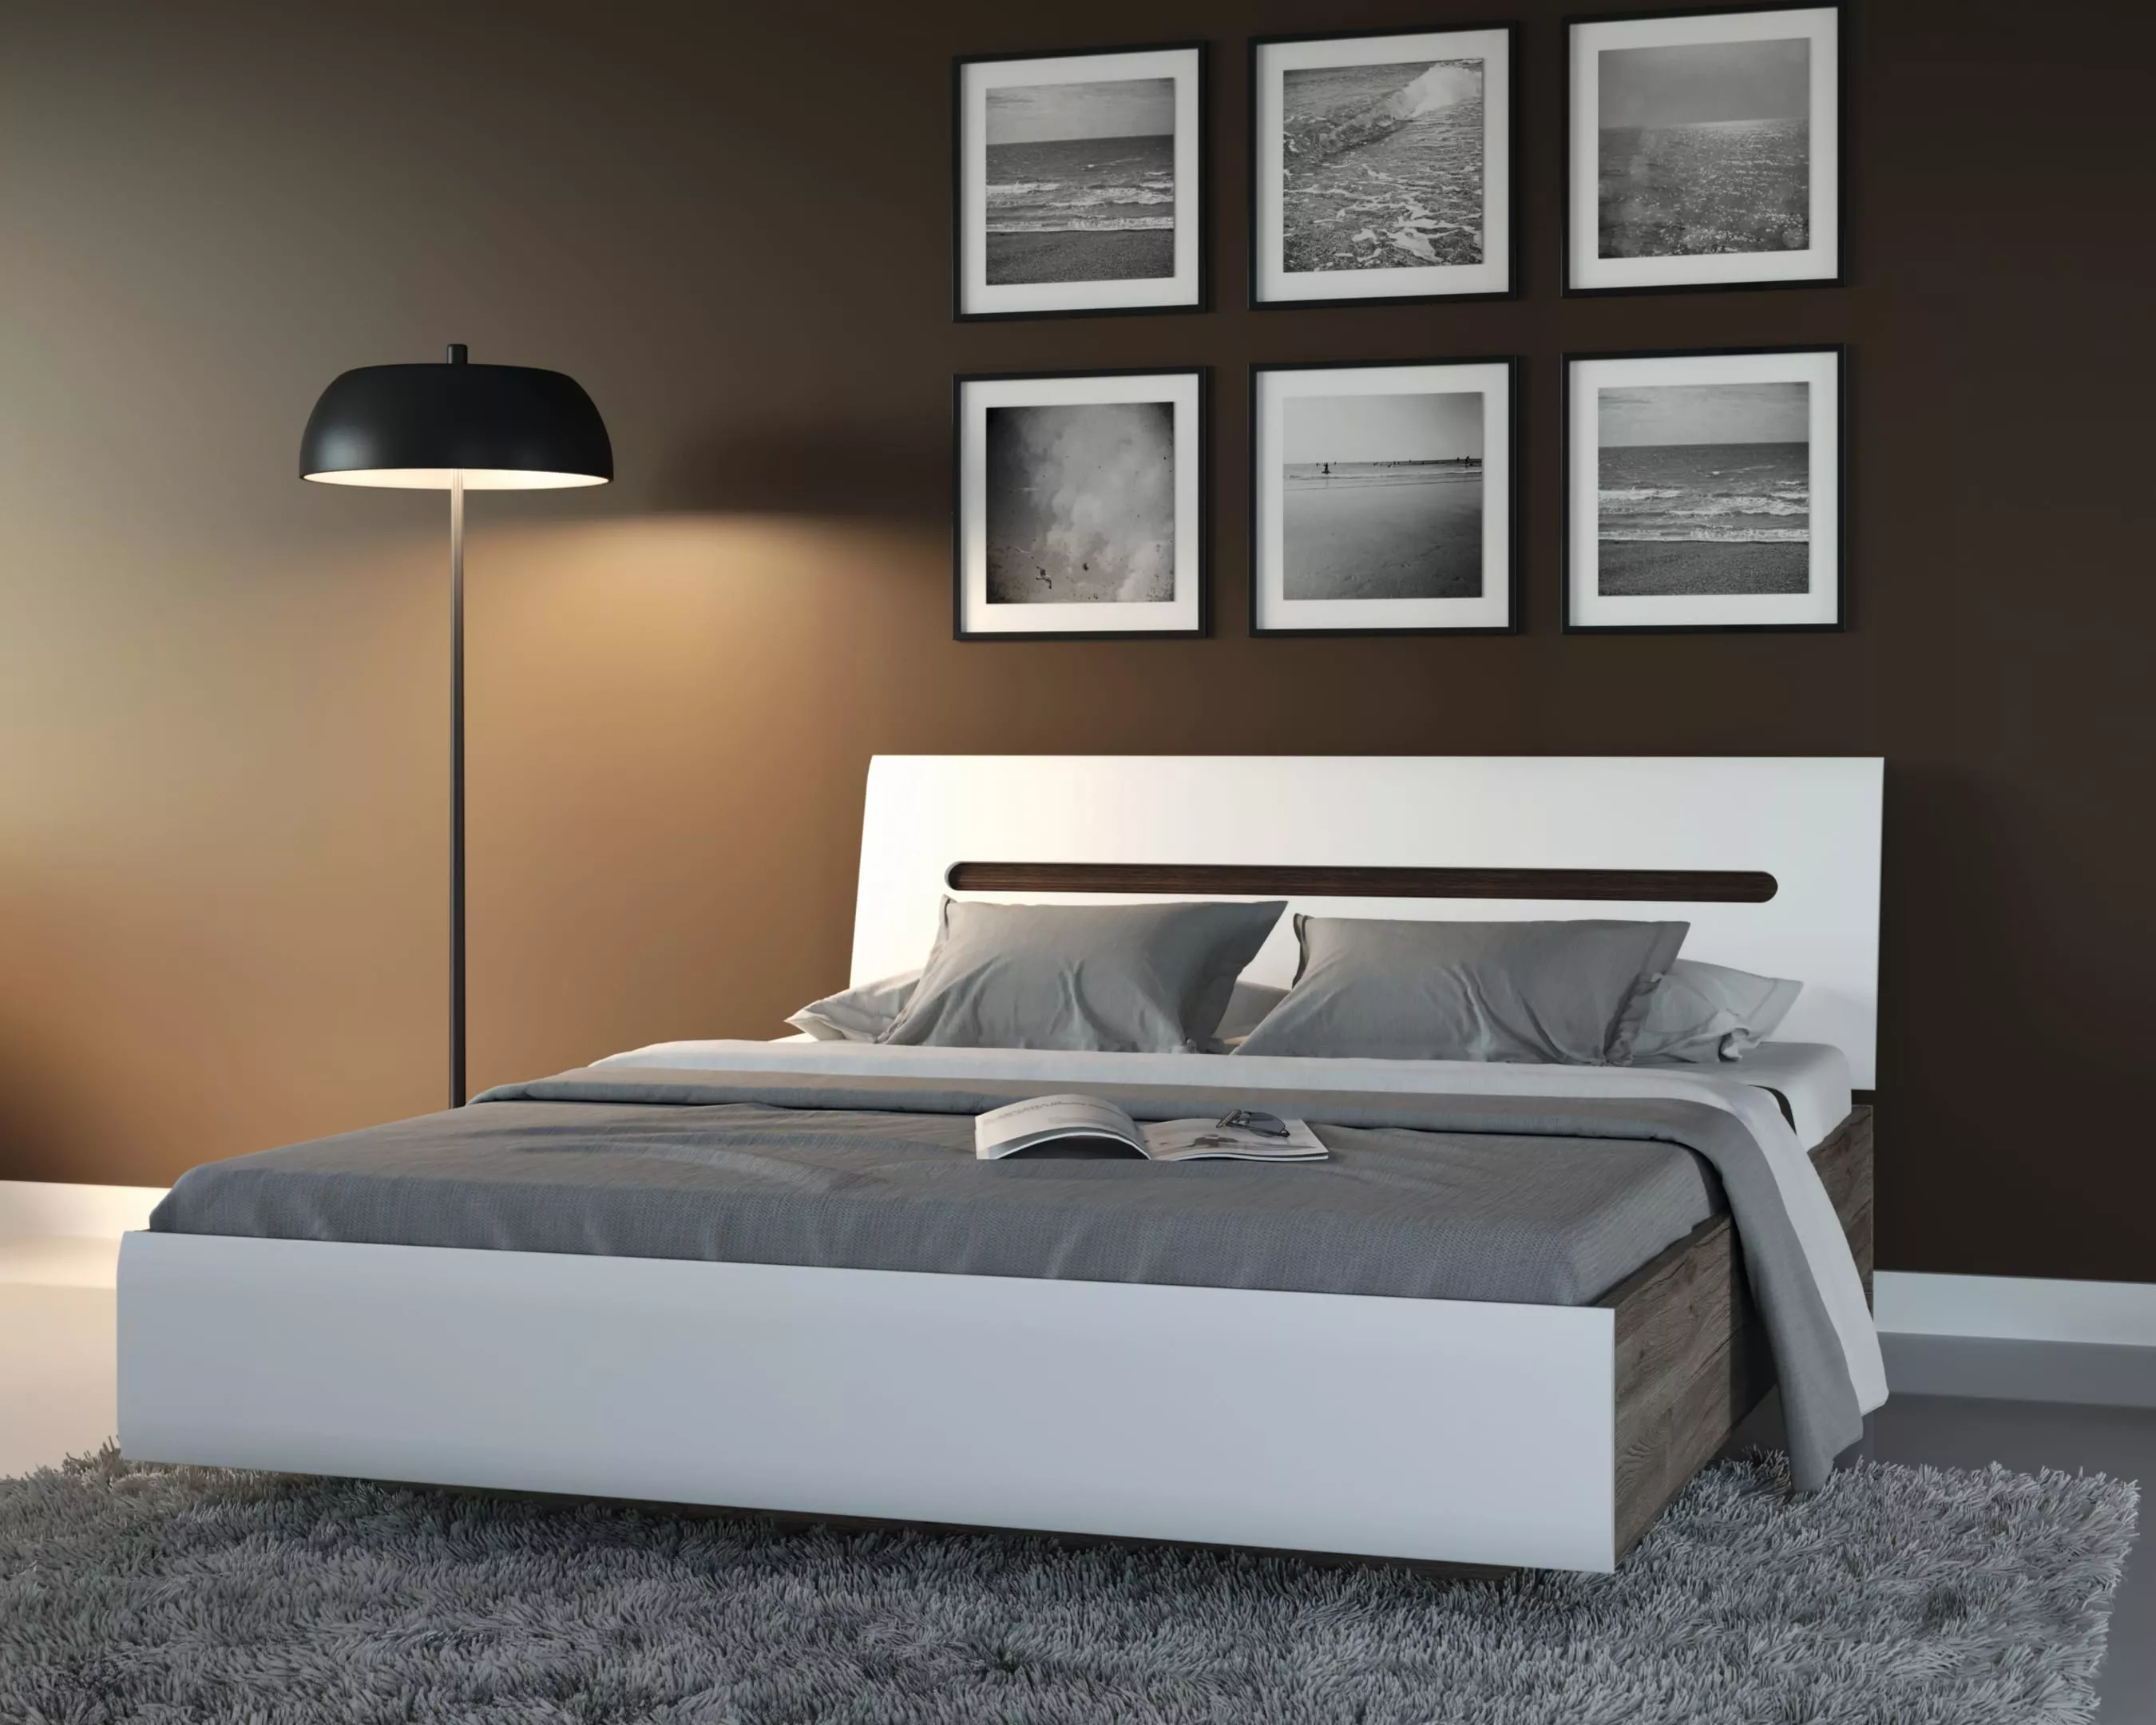 Спальня | Кровати | АЦТЕКА Кровать LOZ140x200 (Белый блеск) Мебель ☆ IDEA в Севастополе| BRW, Брест anons